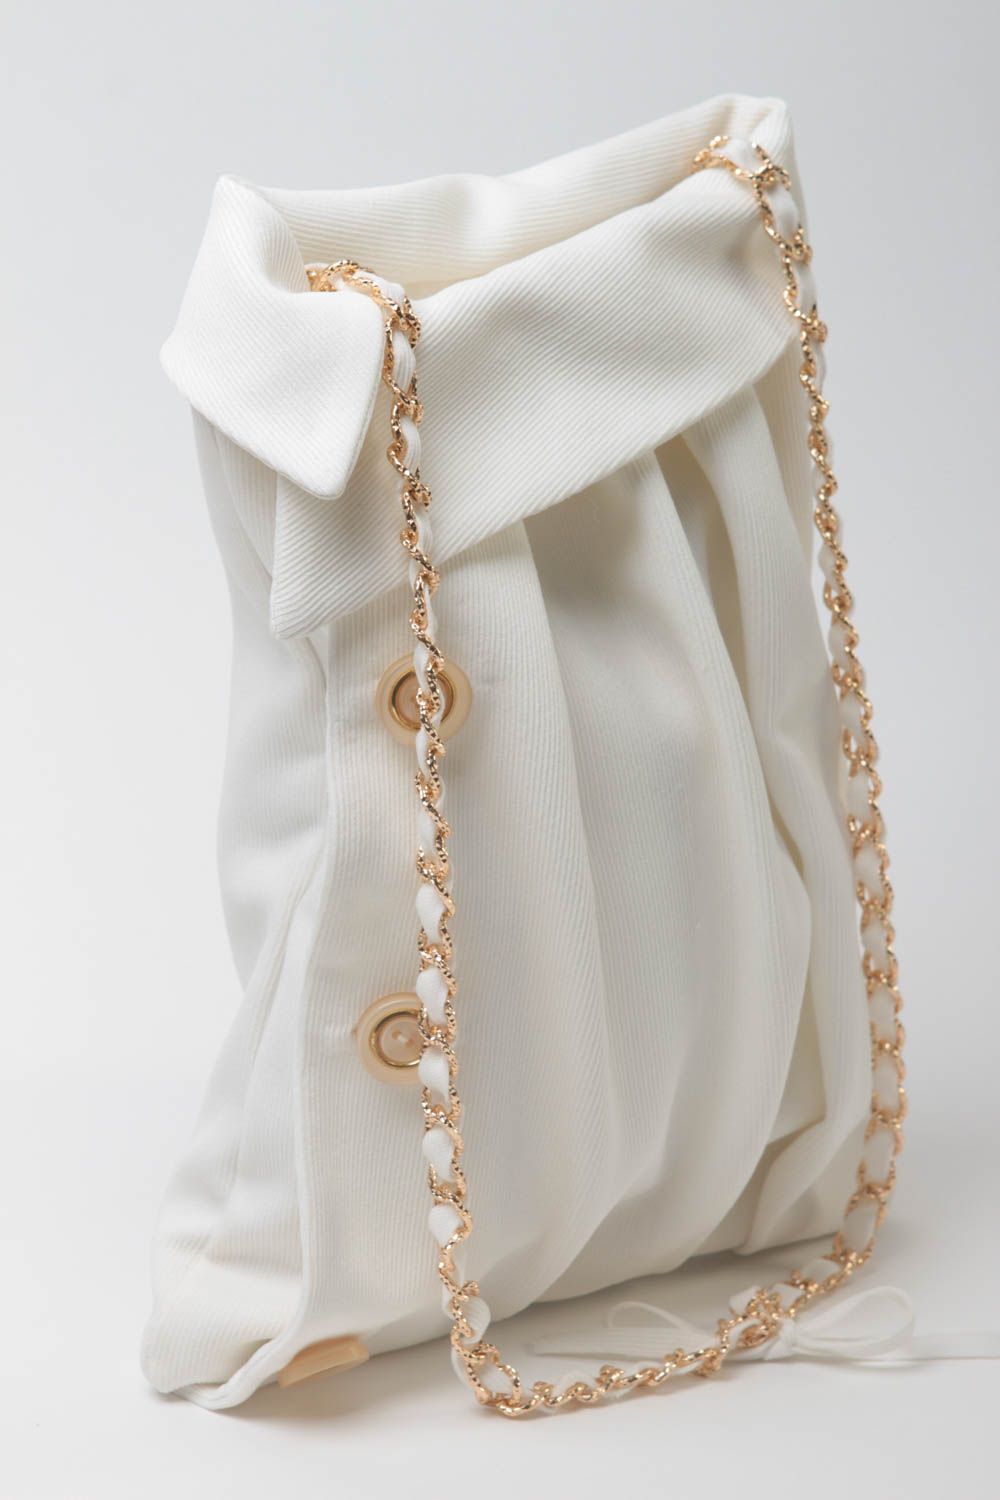 Sac bandoulière fait main Sac à main tissu blanc avec chaîne Accessoire femme photo 2